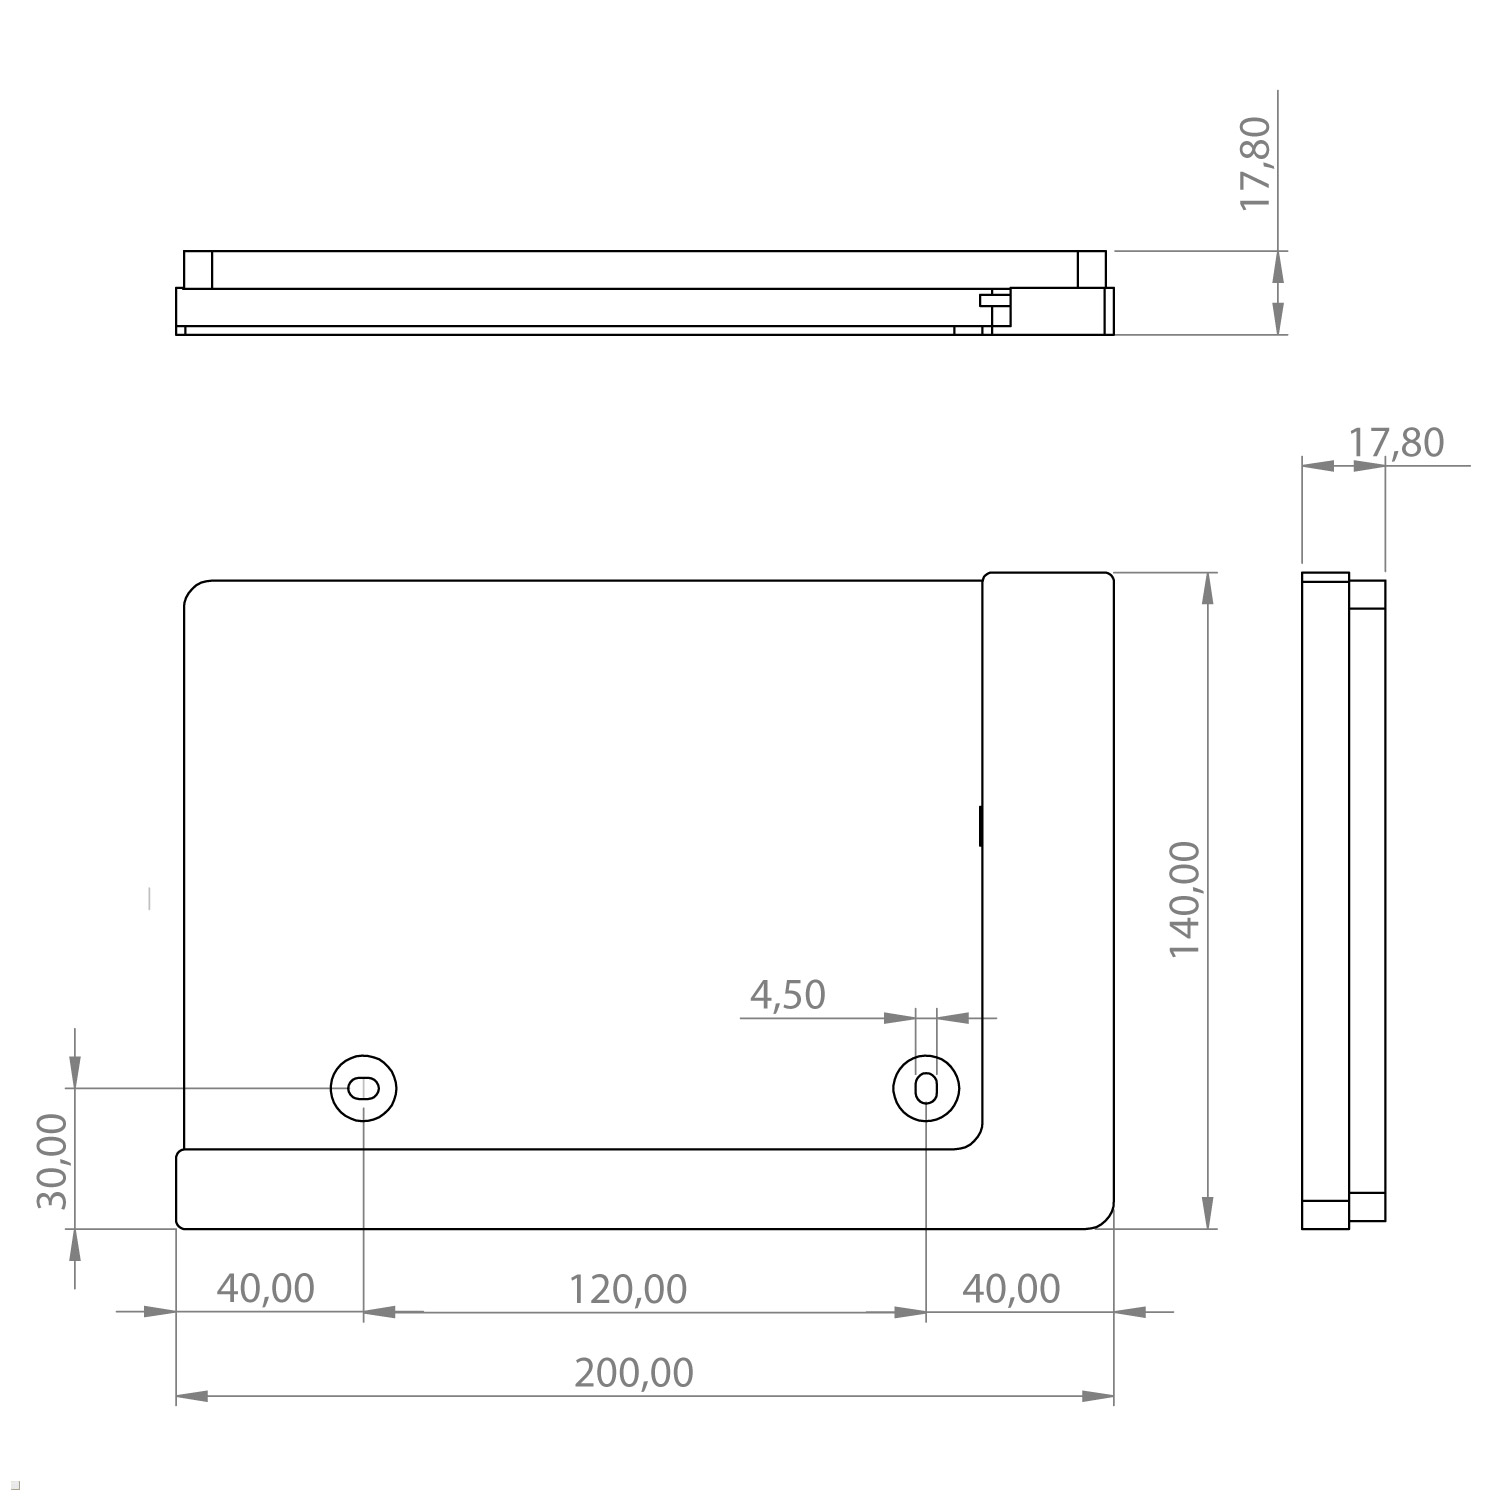 TABLINES weiß TWP Tablet Tab Wandhalterung, für Ladefunktion A7 mit Tablethalter 10.4 Samsung